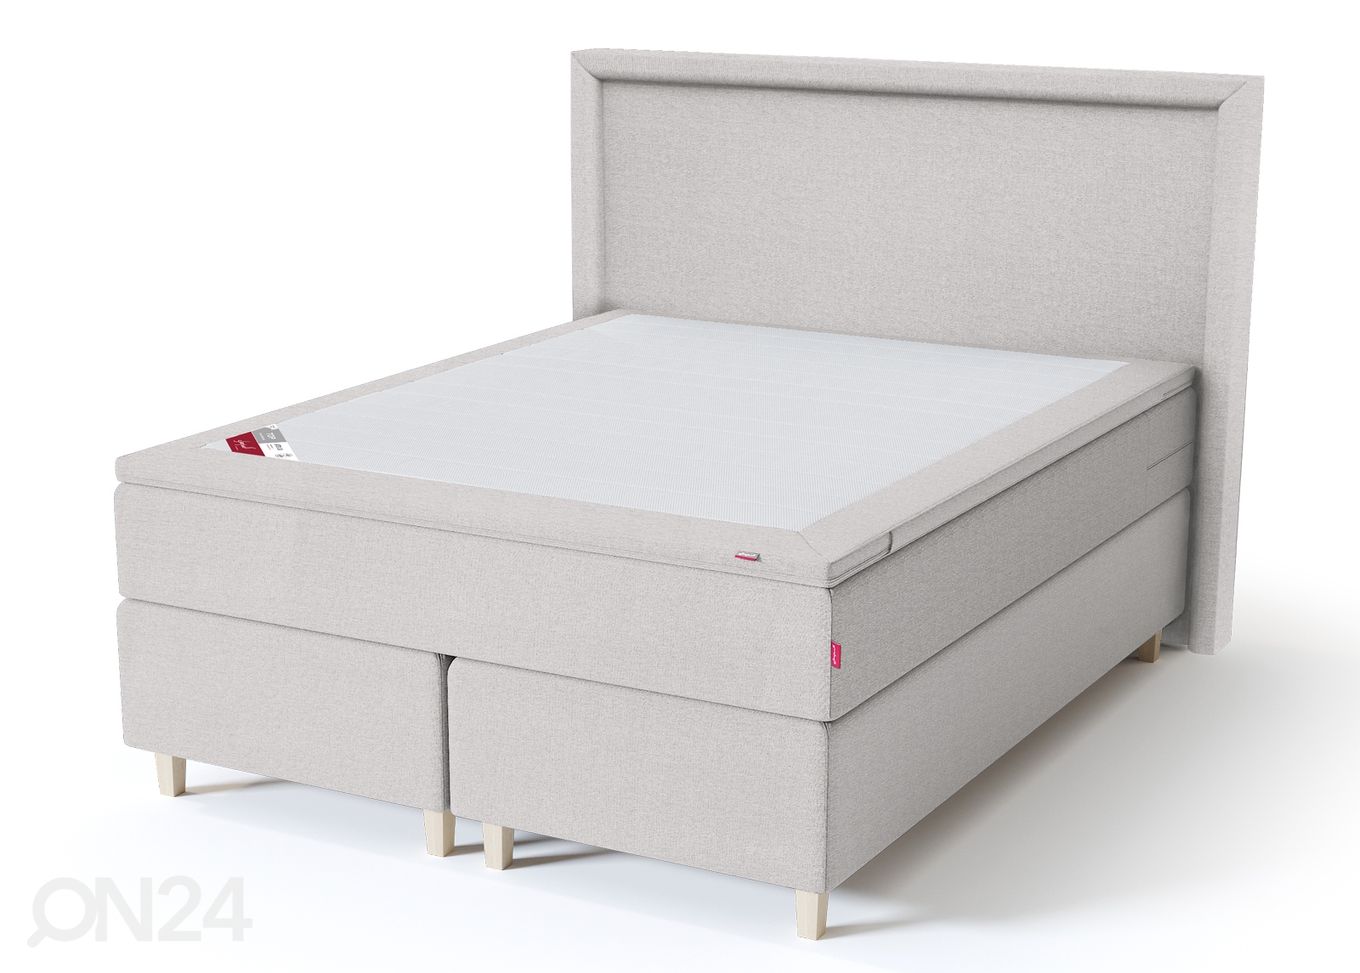 Sleepwell Black континентальная кровать 160x200 cm увеличить